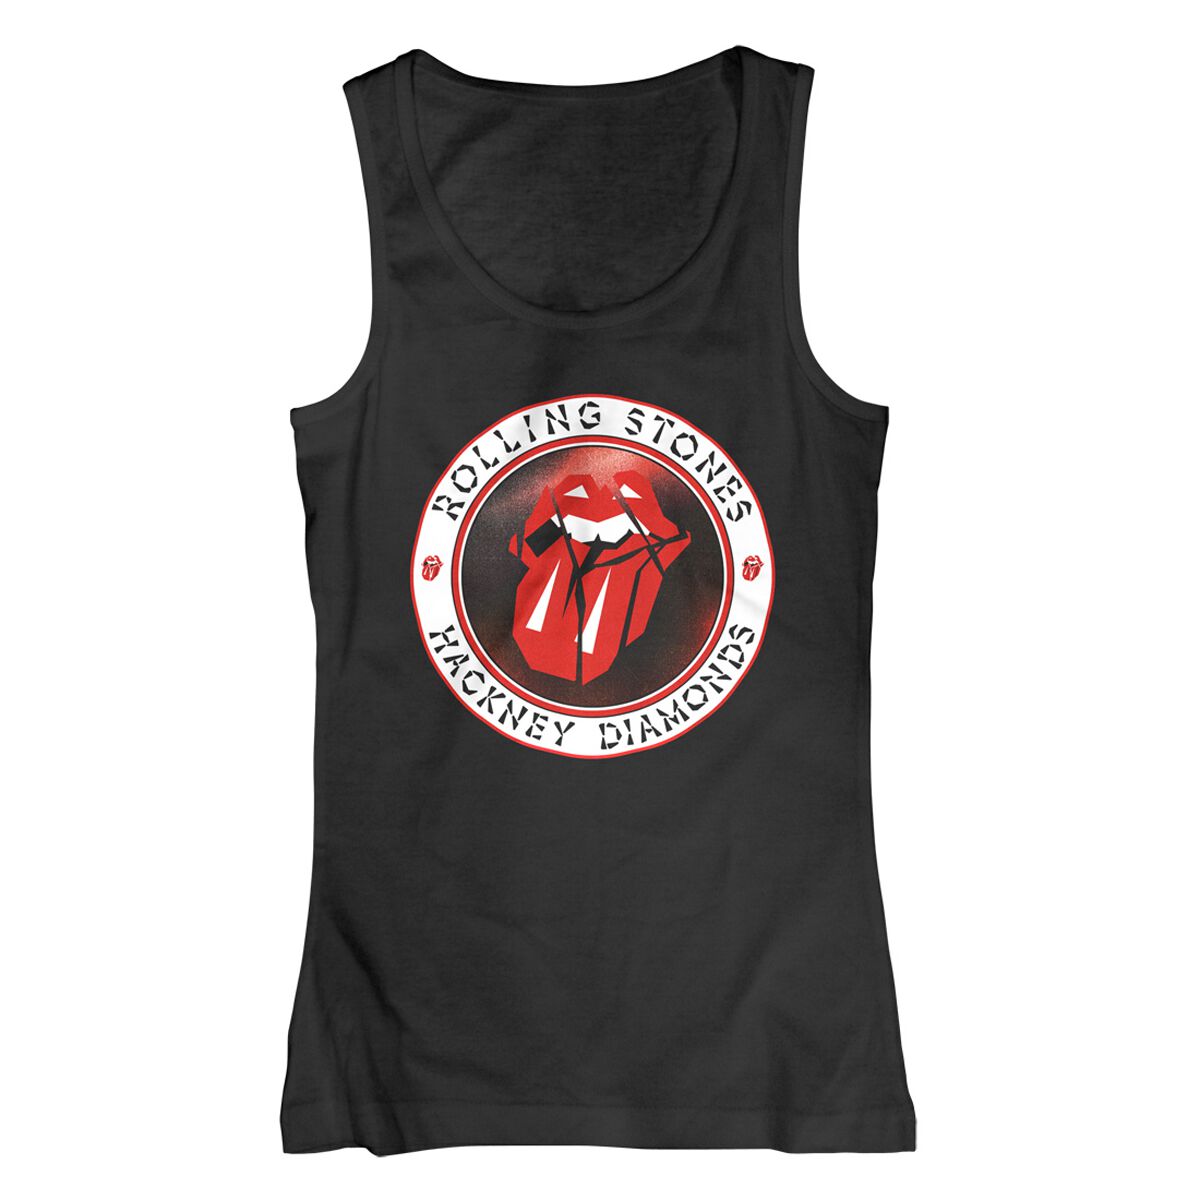 The Rolling Stones Top - Hackney Diamonds Circle Label - S bis XXL - für Damen - Größe S - schwarz  - Lizenziertes Merchandise!